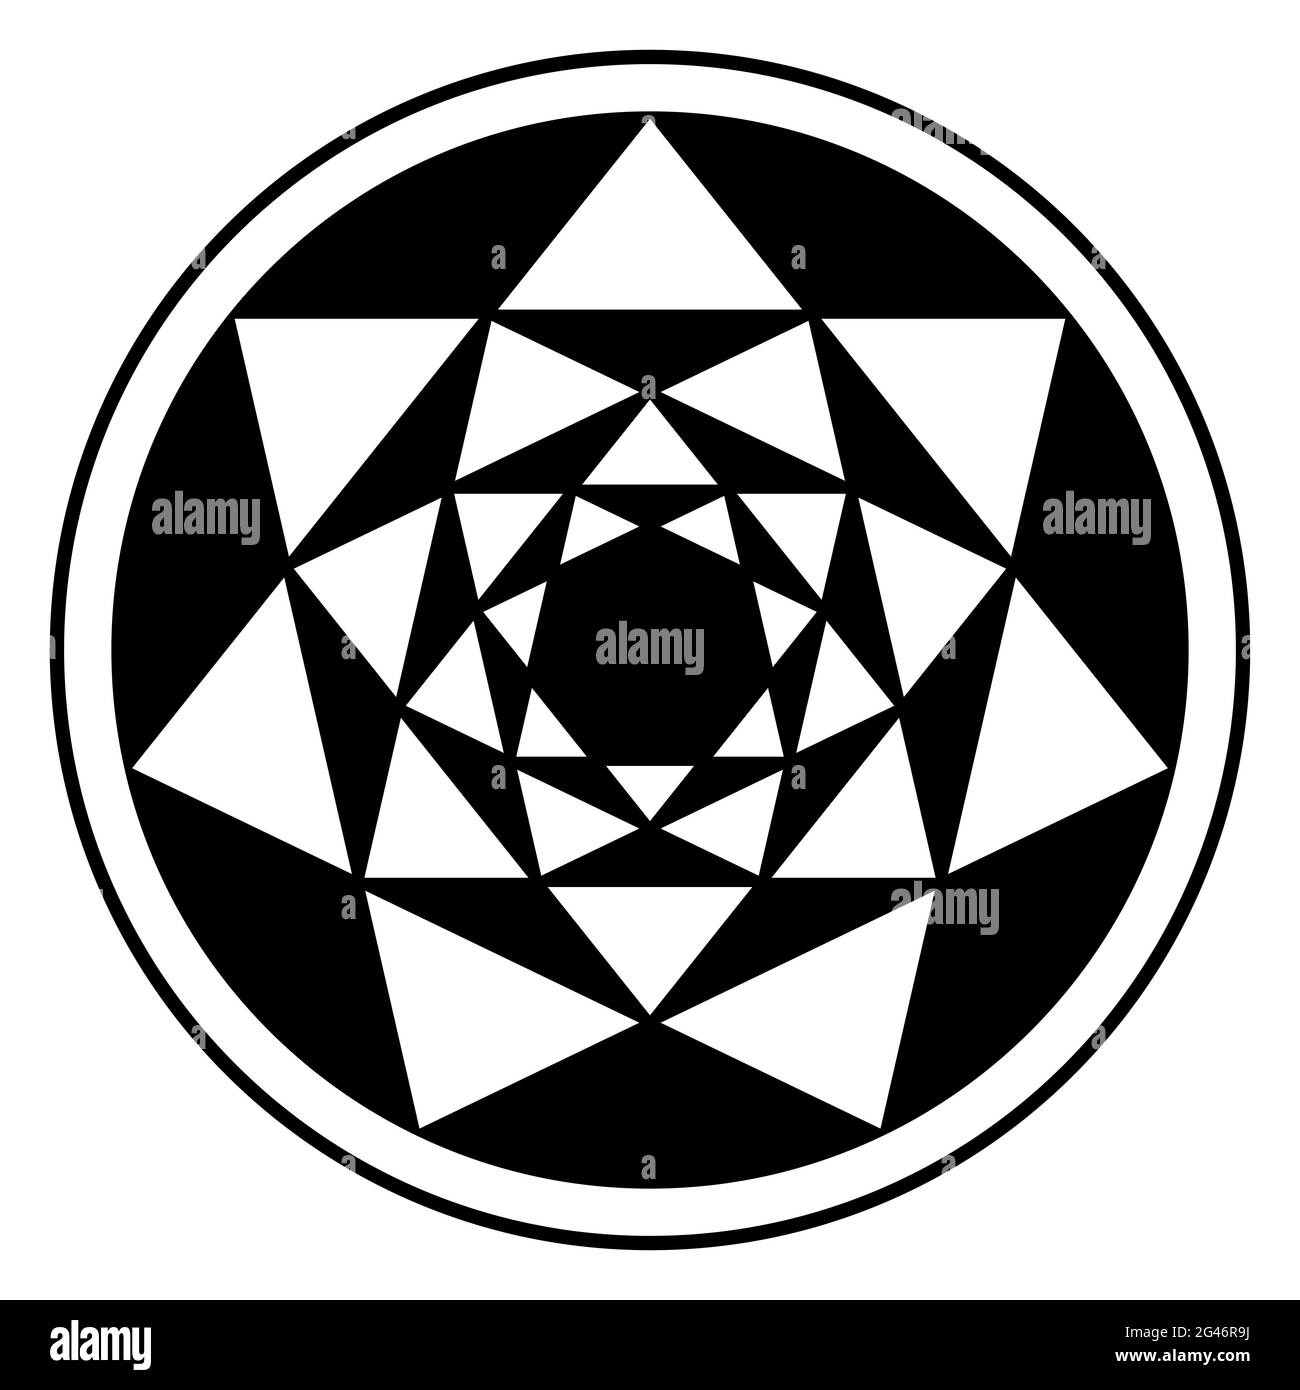 Invertierte vier Heptagramme und ihre resultierenden Dreiecksmuster in einem Kreisrahmen. Kreuzungspunkte von siebenzackigen Sternen, die sich ineinander befinden. Stockfoto